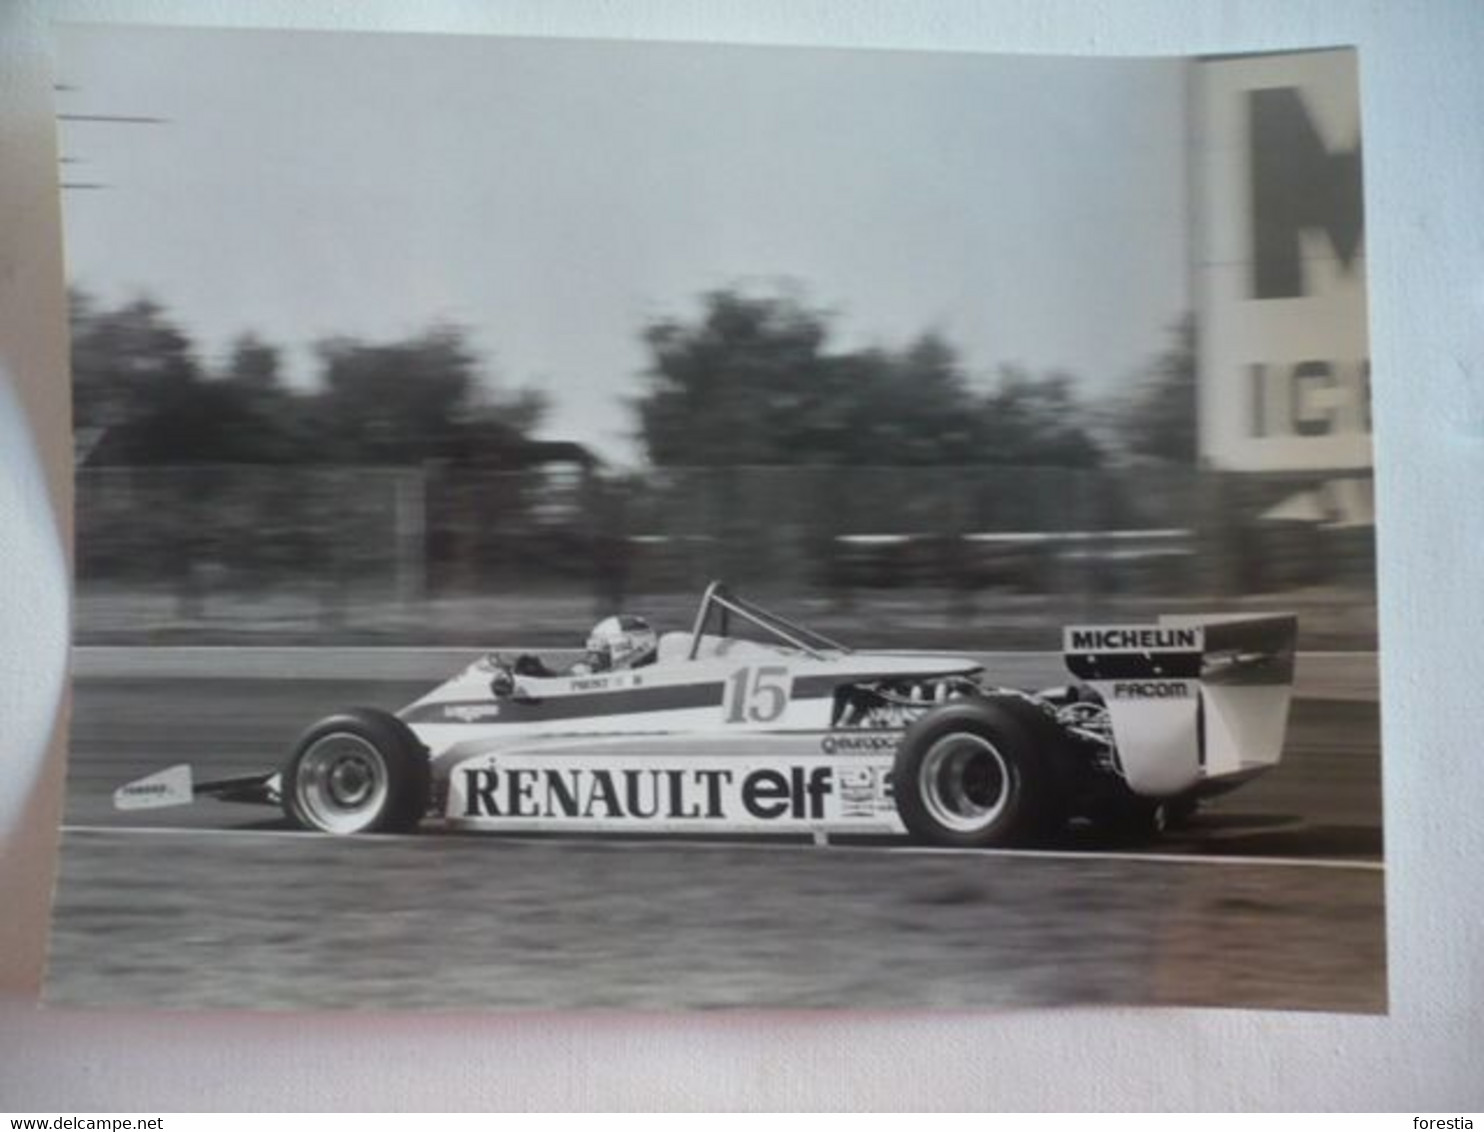 Photo Presse IRP - Grand Prix De Belgique 1981 - ZOLDER - RENAULT (RE 30) - Alain PROST - Automobile - F1